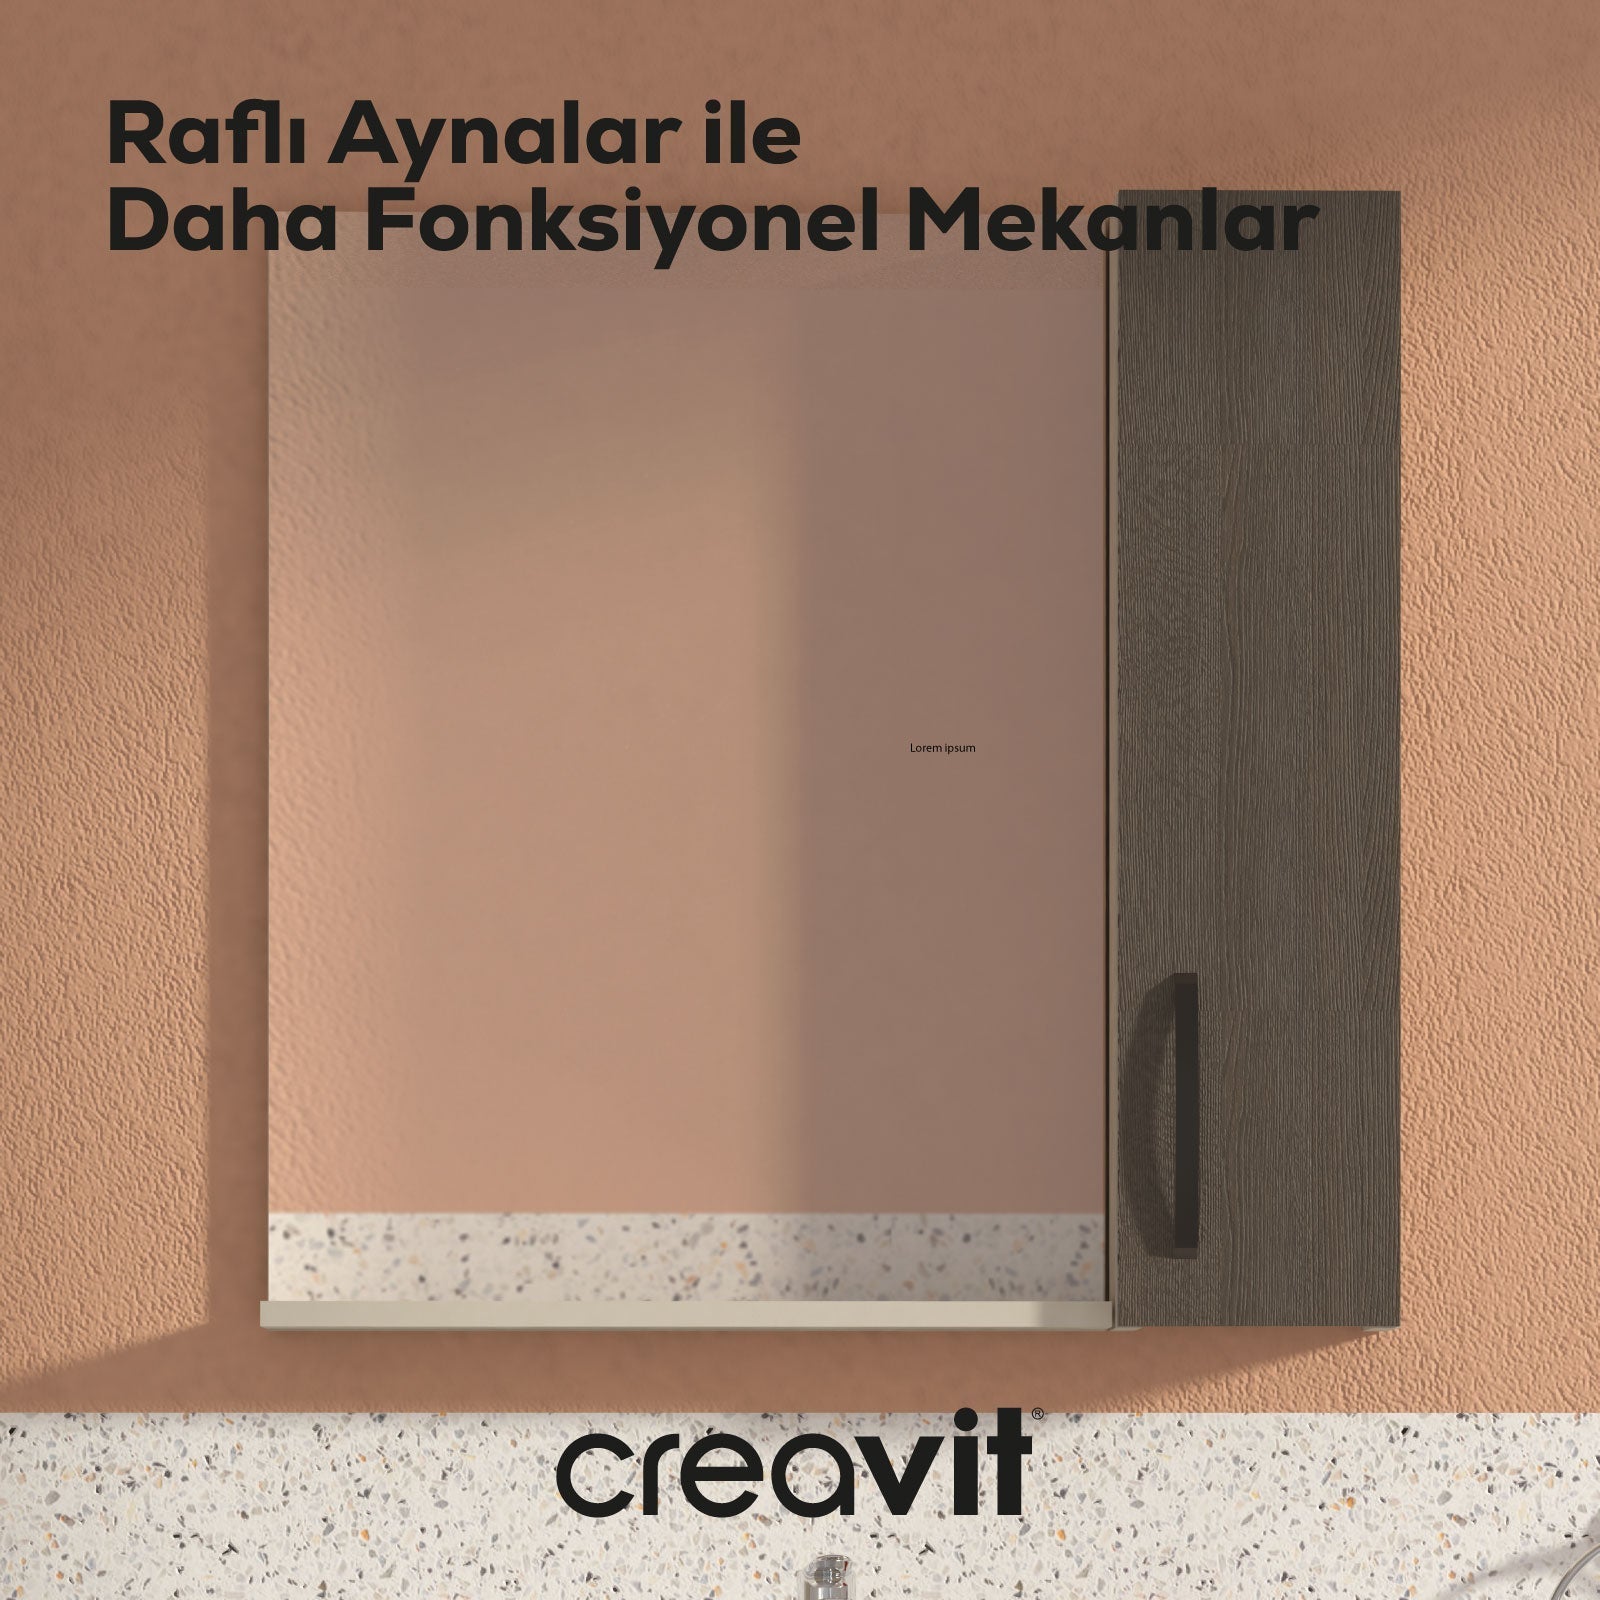 D10 50 cm Melamin Raflı Ayna Gri - Creavit | Banyo Bu Tarafta